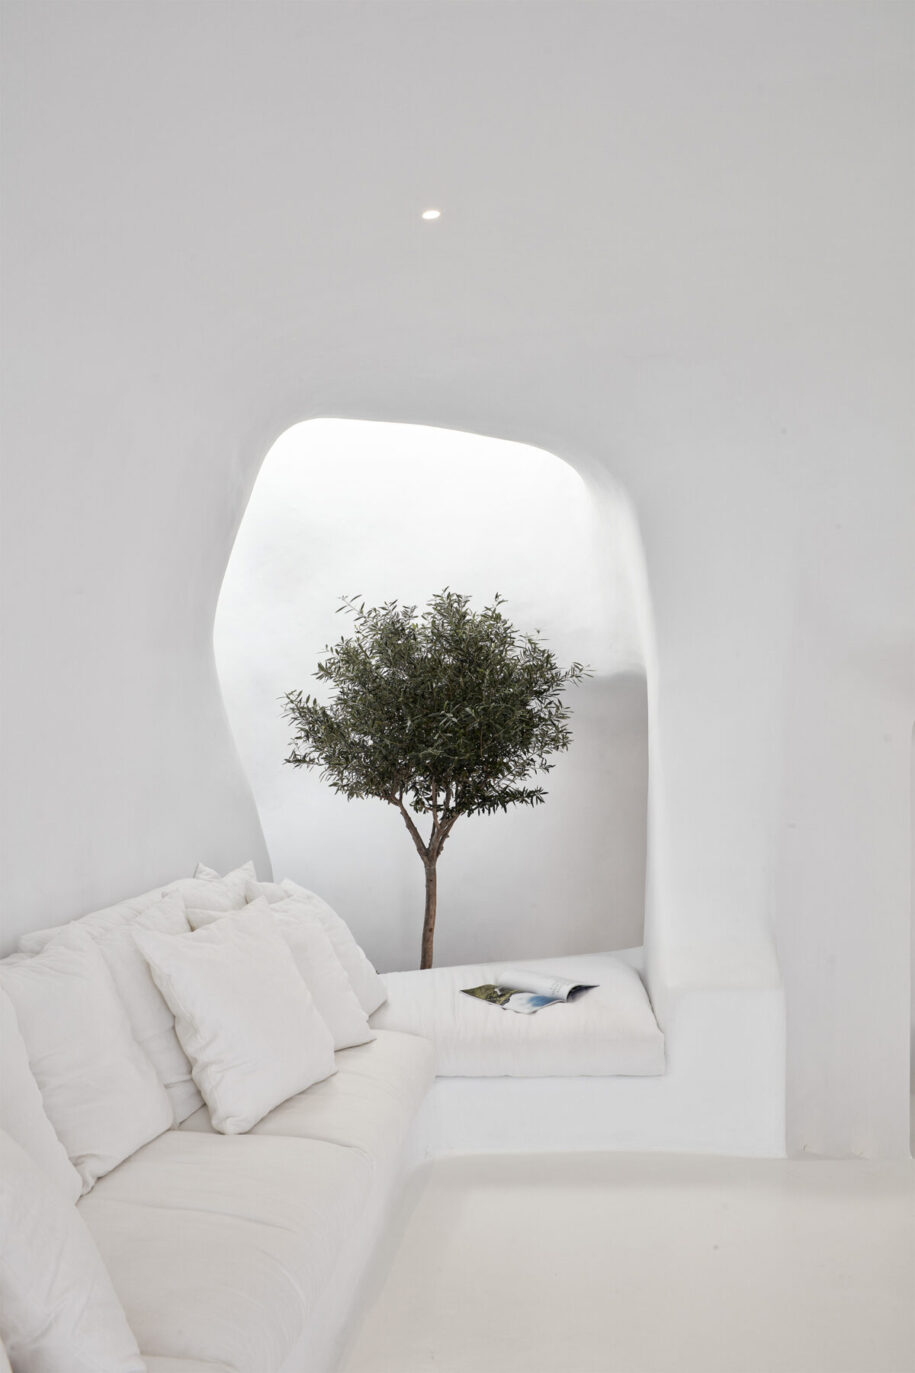 Archisearch Architect Elly Alexiou designed Cave House - Villa Charissa, Aenaon Villas in Imerovigli, Santorini